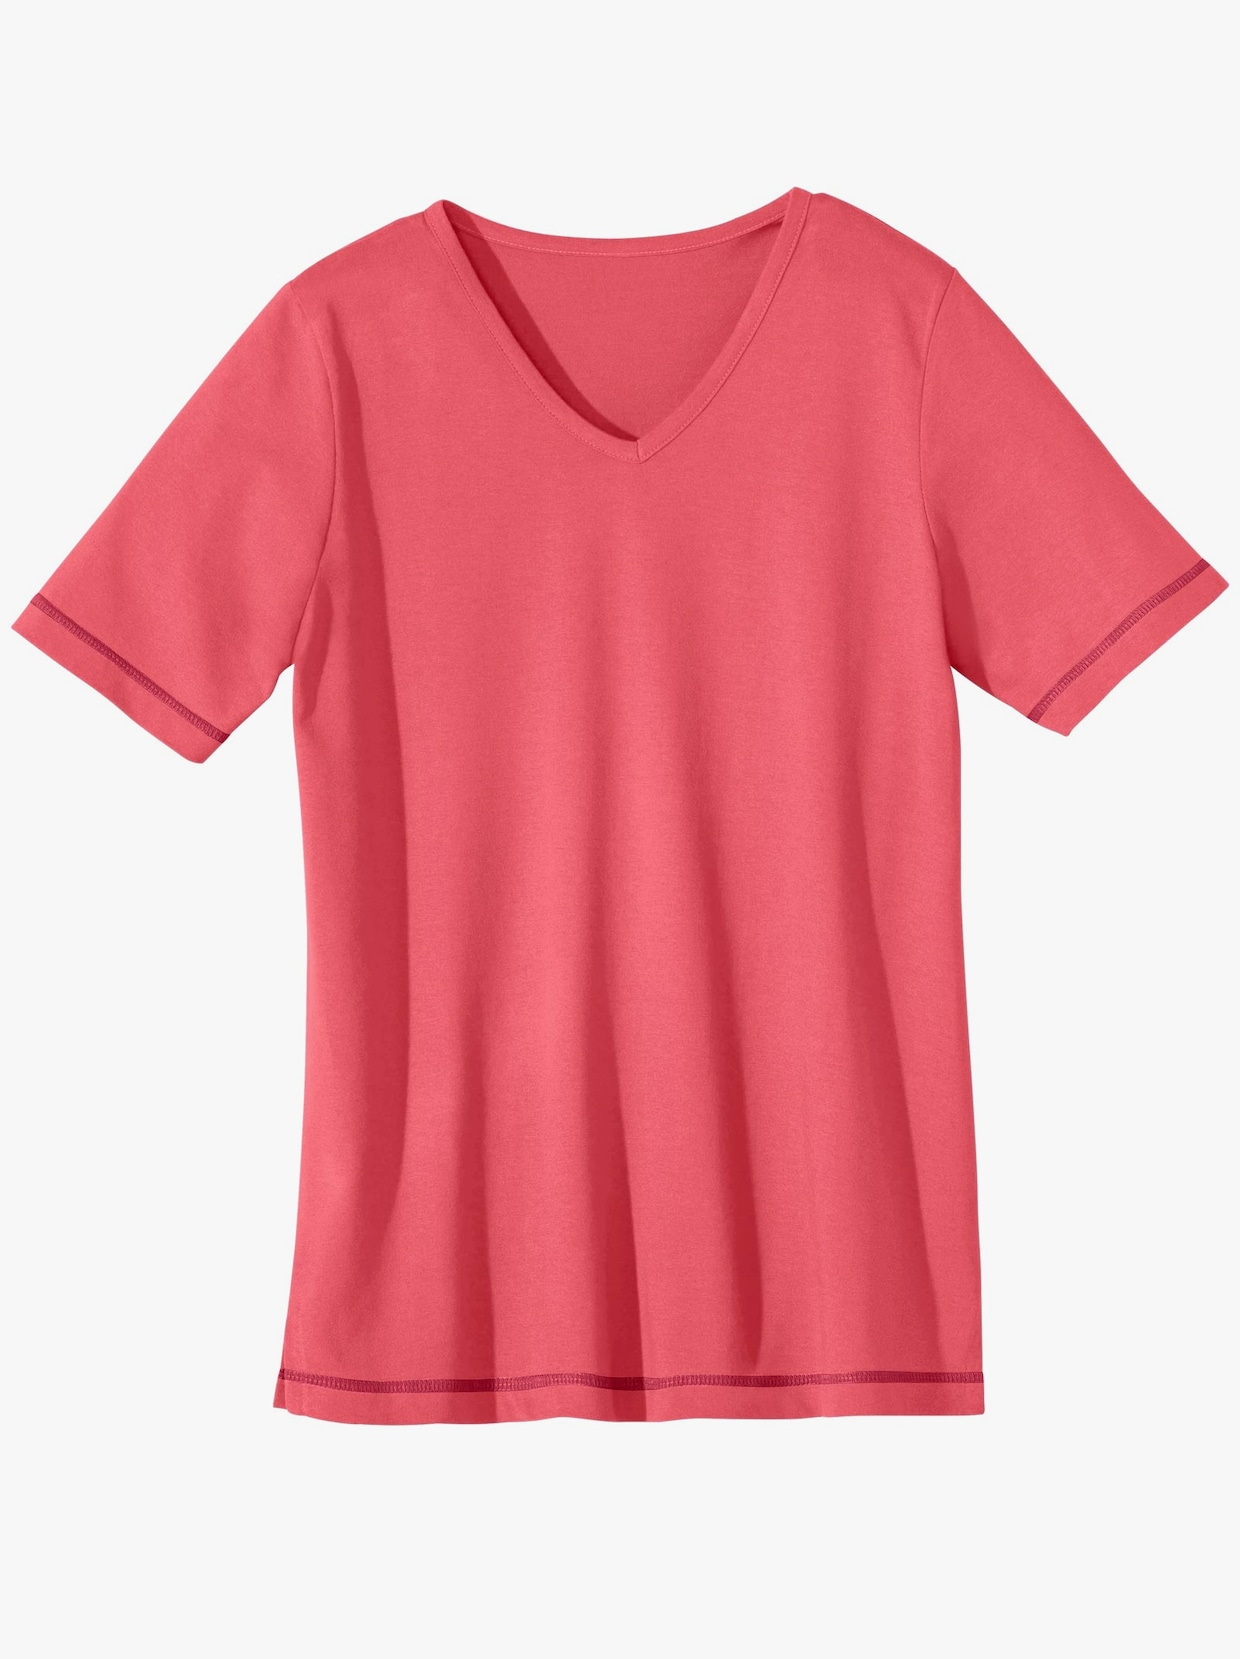 Shirt - hummerrot